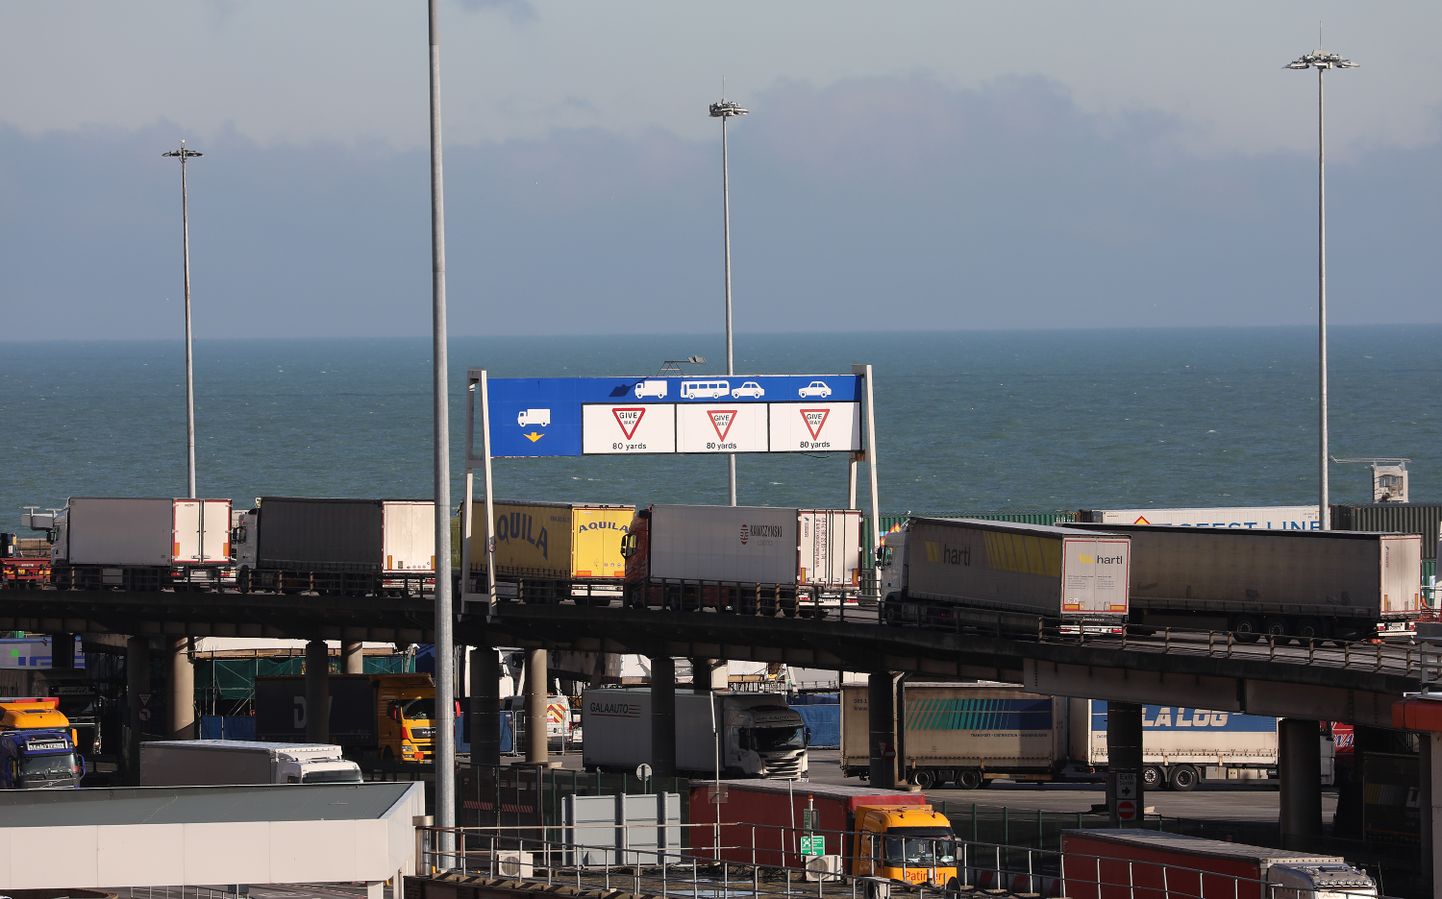 Doveri sadamasse saabuvad kaubaveokid.